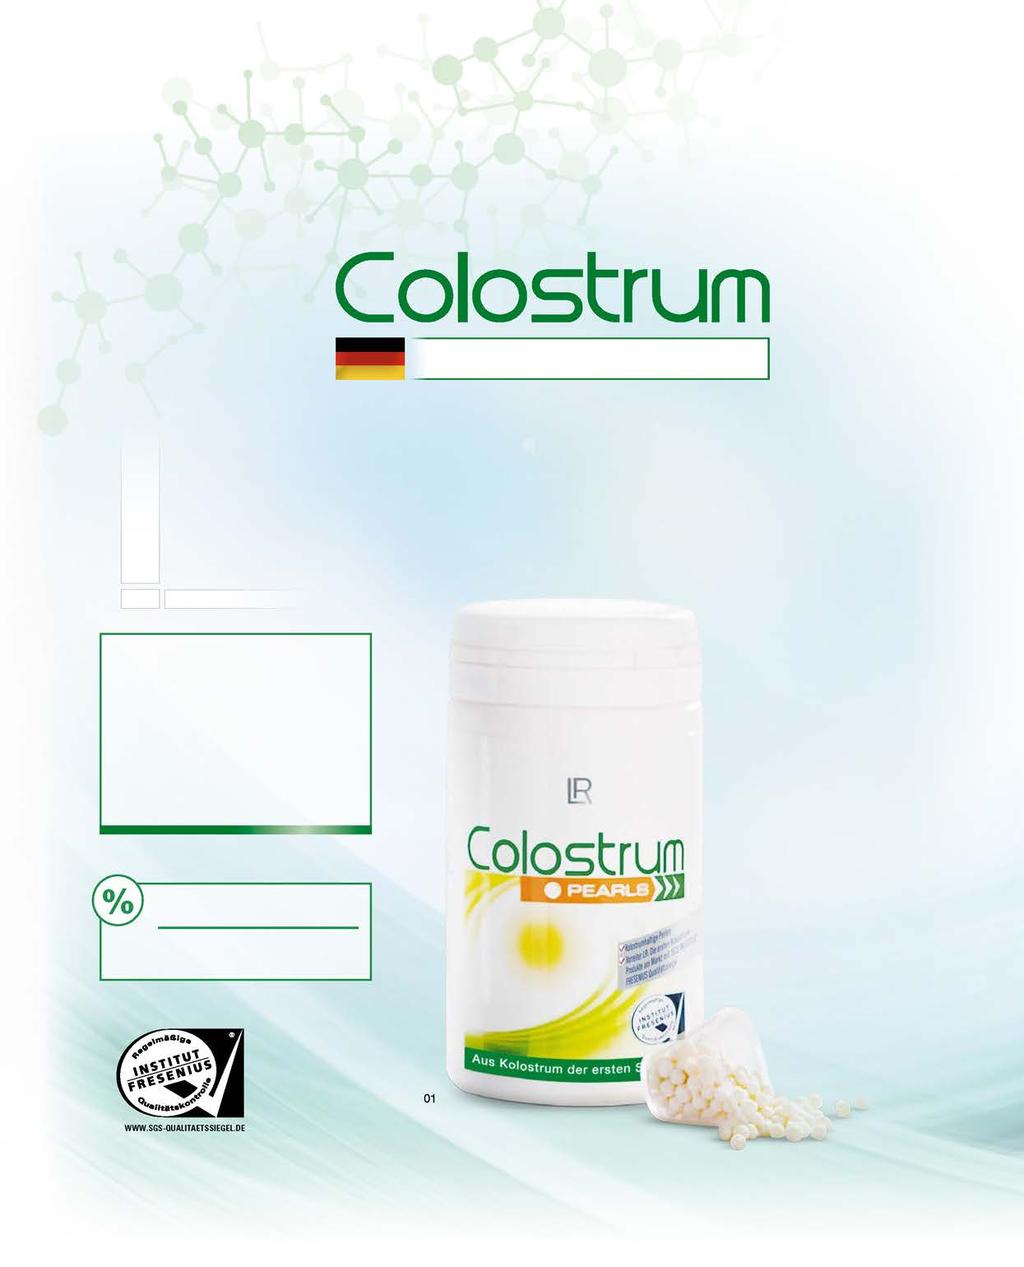 12 Αποκλειστικά από αγελάδες Γερμανίας Ανά Ημερήσια Δόση Colostrum Pearls 800 Πρωτόγαλα (mg) Η νόστιμη εναλλακτική λύση Γλυκές πέρλες που αρέσουν και στα παιδιά 800 mg σκόνη Colostrum ανά Ημερήσια